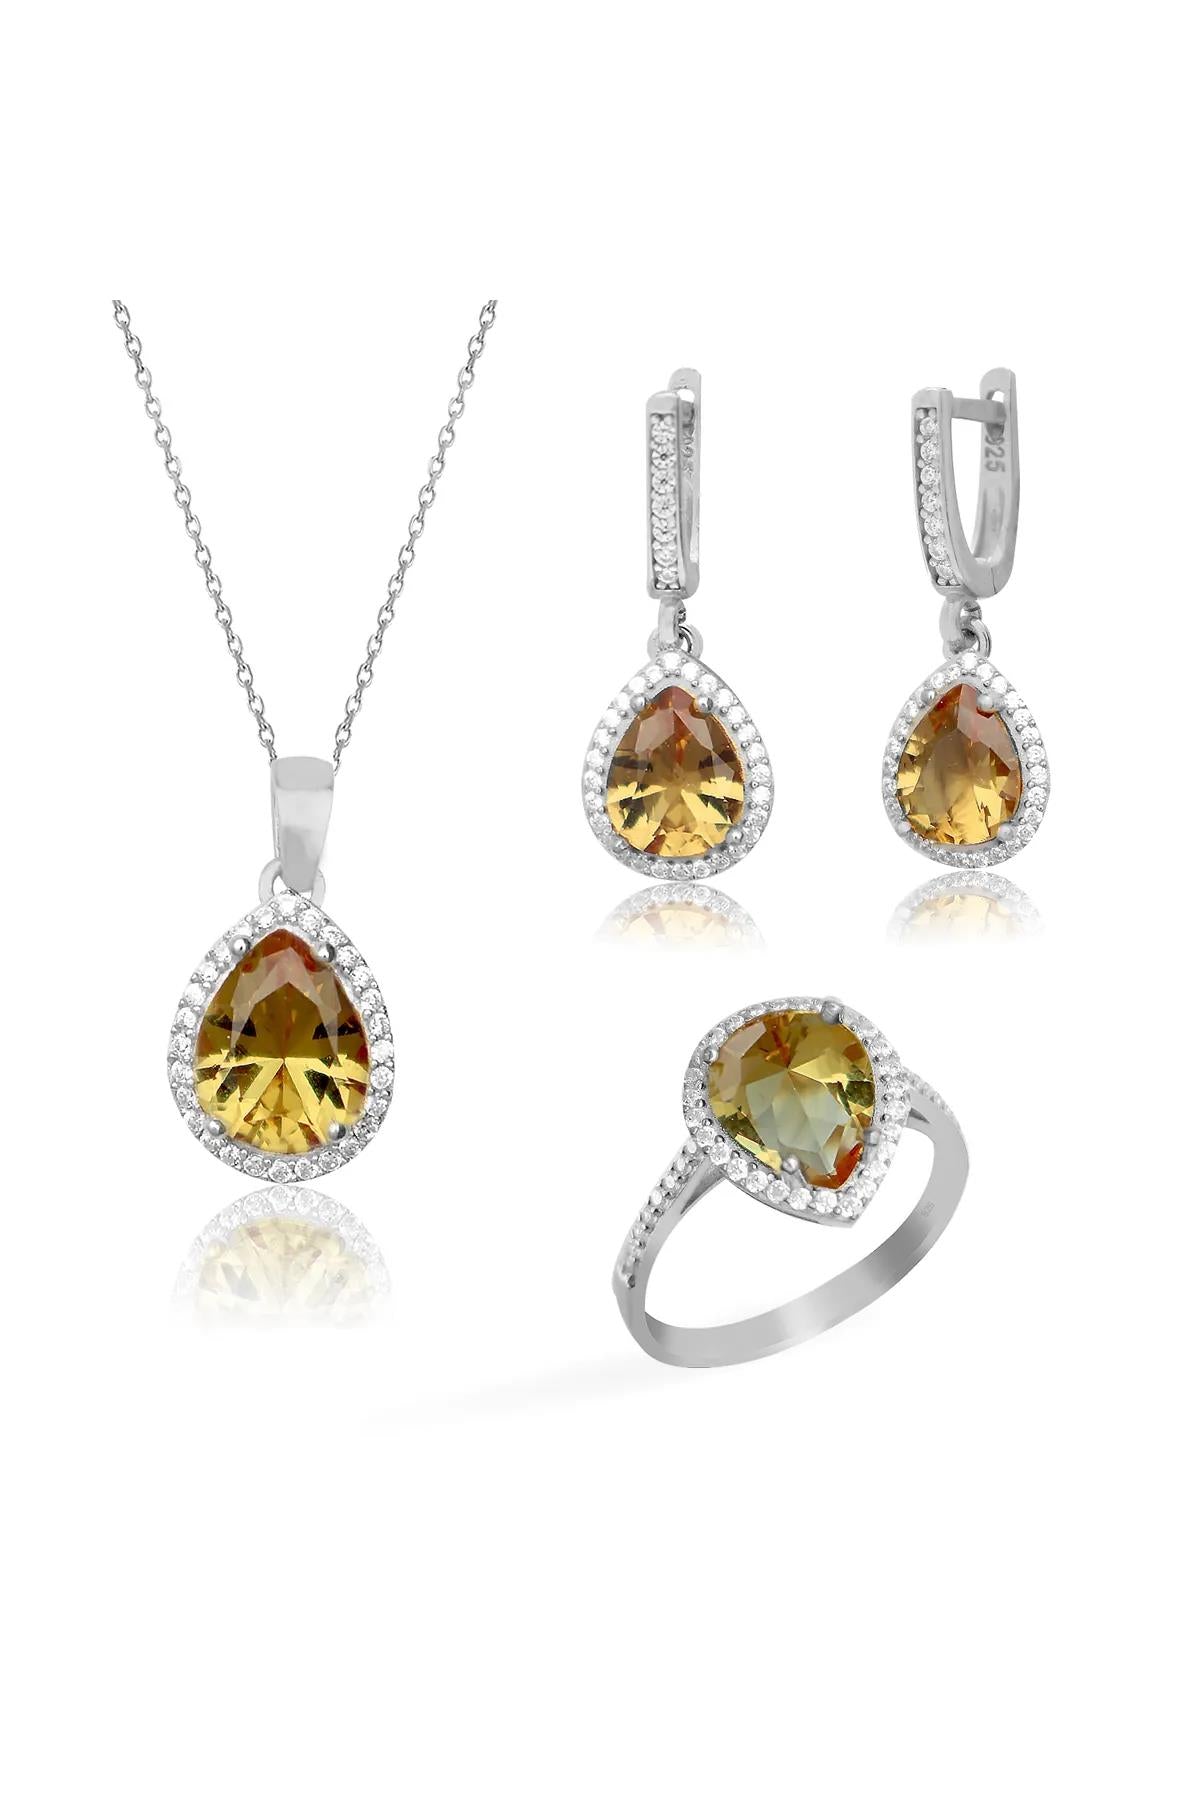 Ve Tesbih Silver Women's Triple Jewelry Set with Zultanite Stone 2